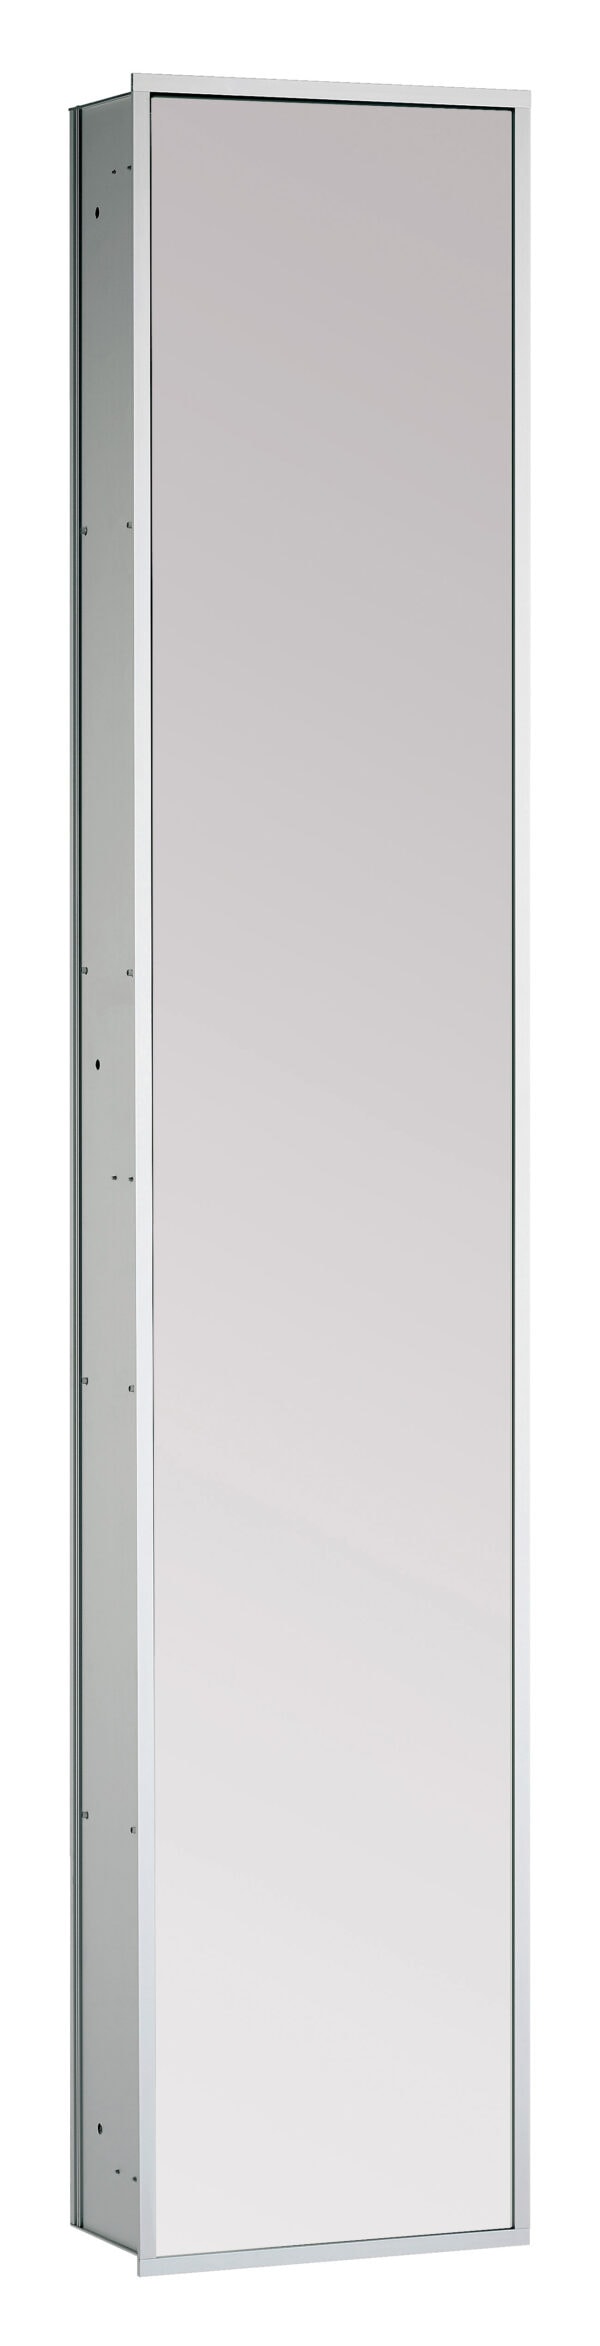 emco asis 300 Kastmodule met spiegeldeur - inbouwmodel